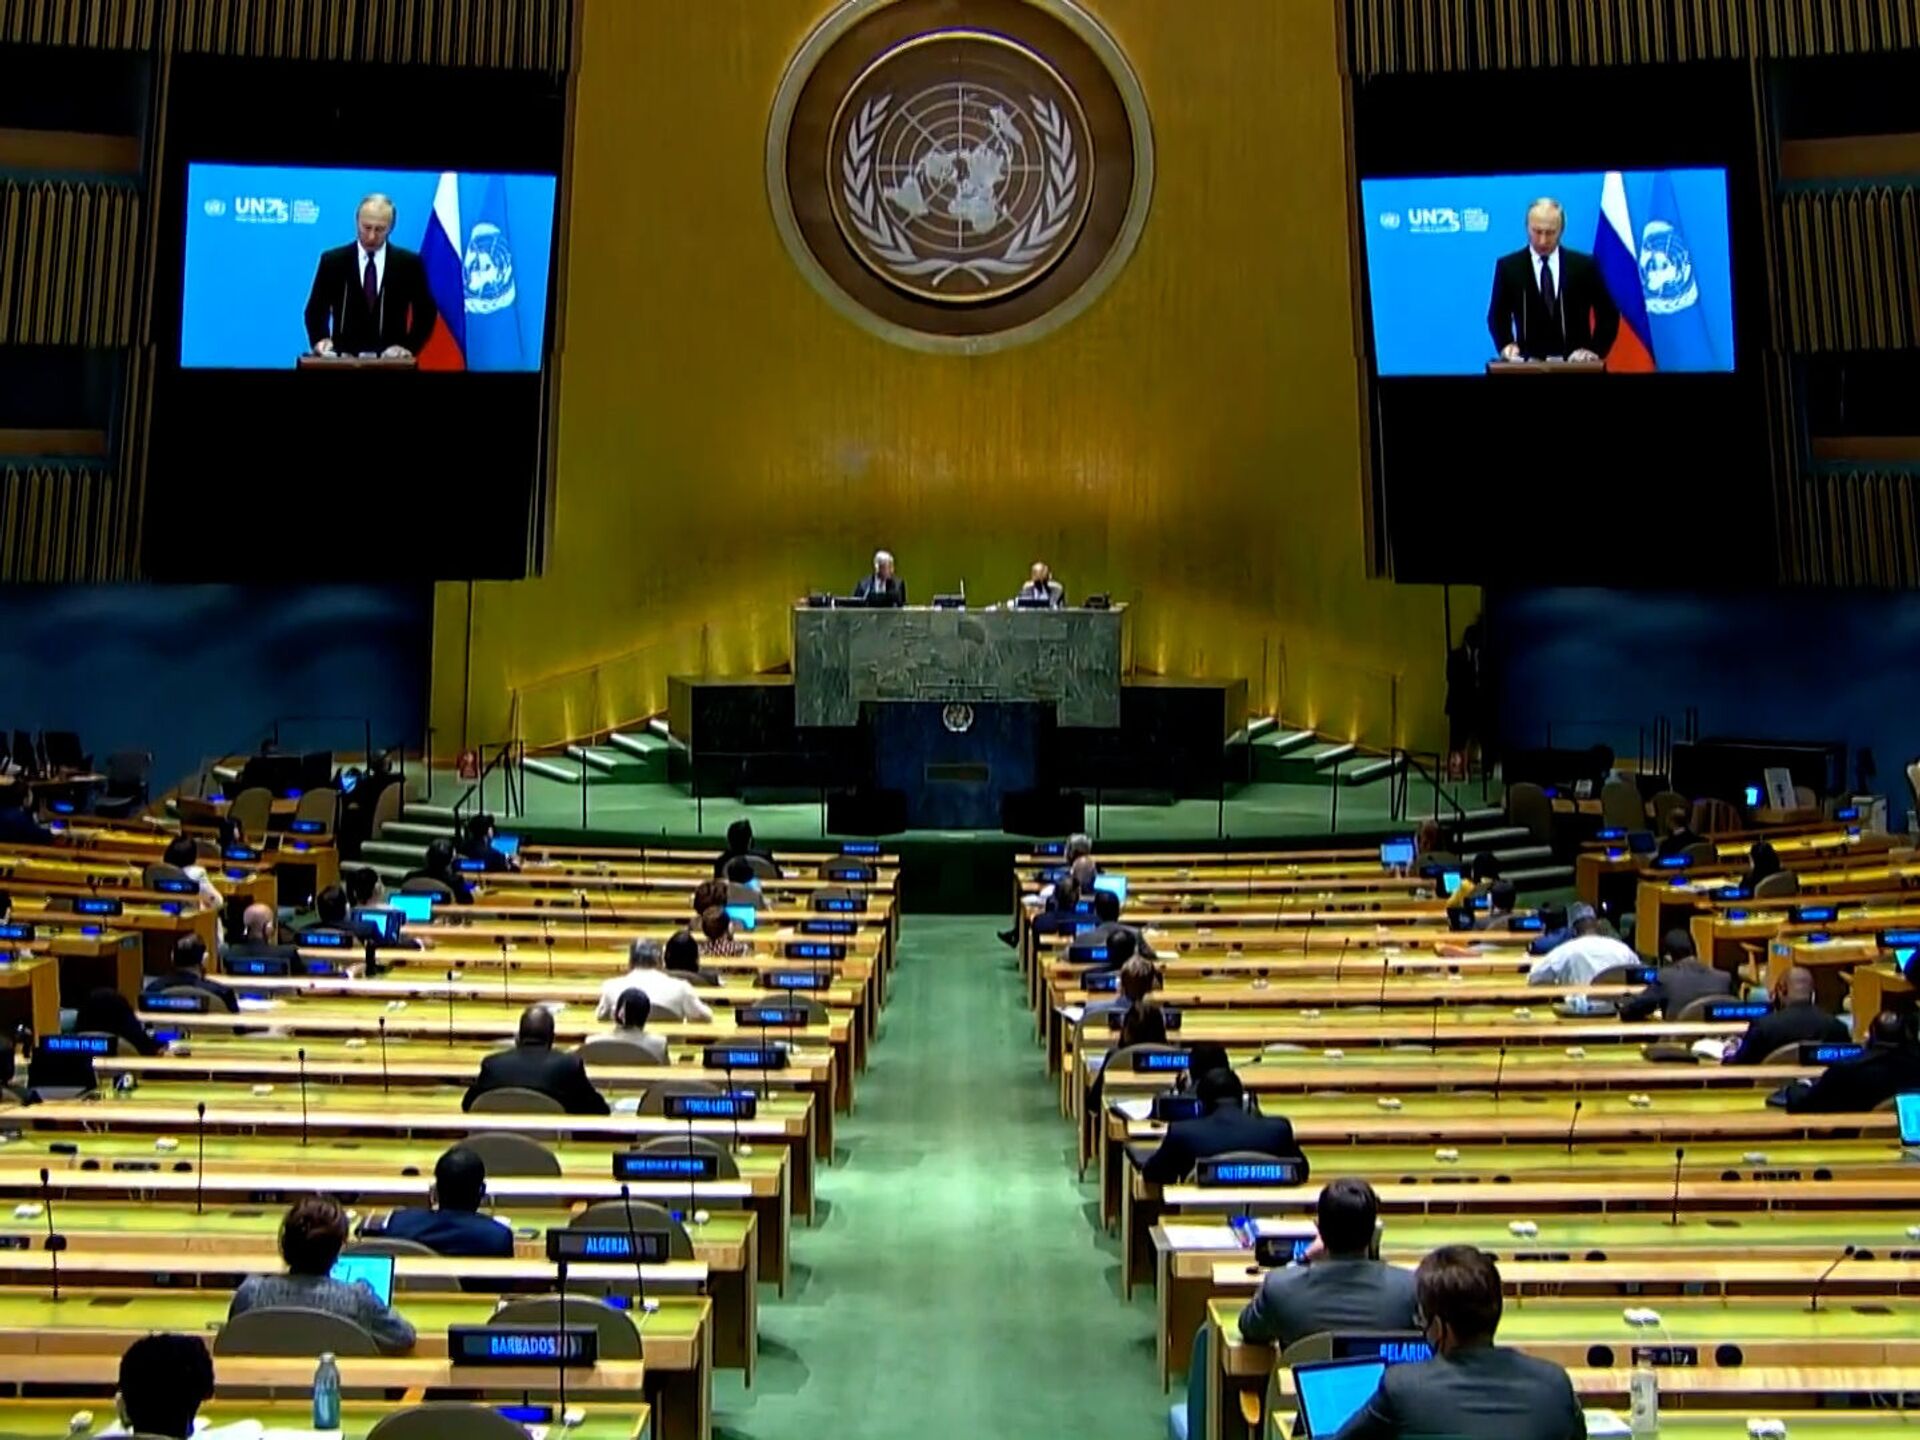 Зал оон. Зал Генеральной Ассамблеи ООН. Зал заседания Генеральной Ассамблеи ООН. Сессия Генеральной Ассамблеи ООН. 75 Генассамблея ООН.